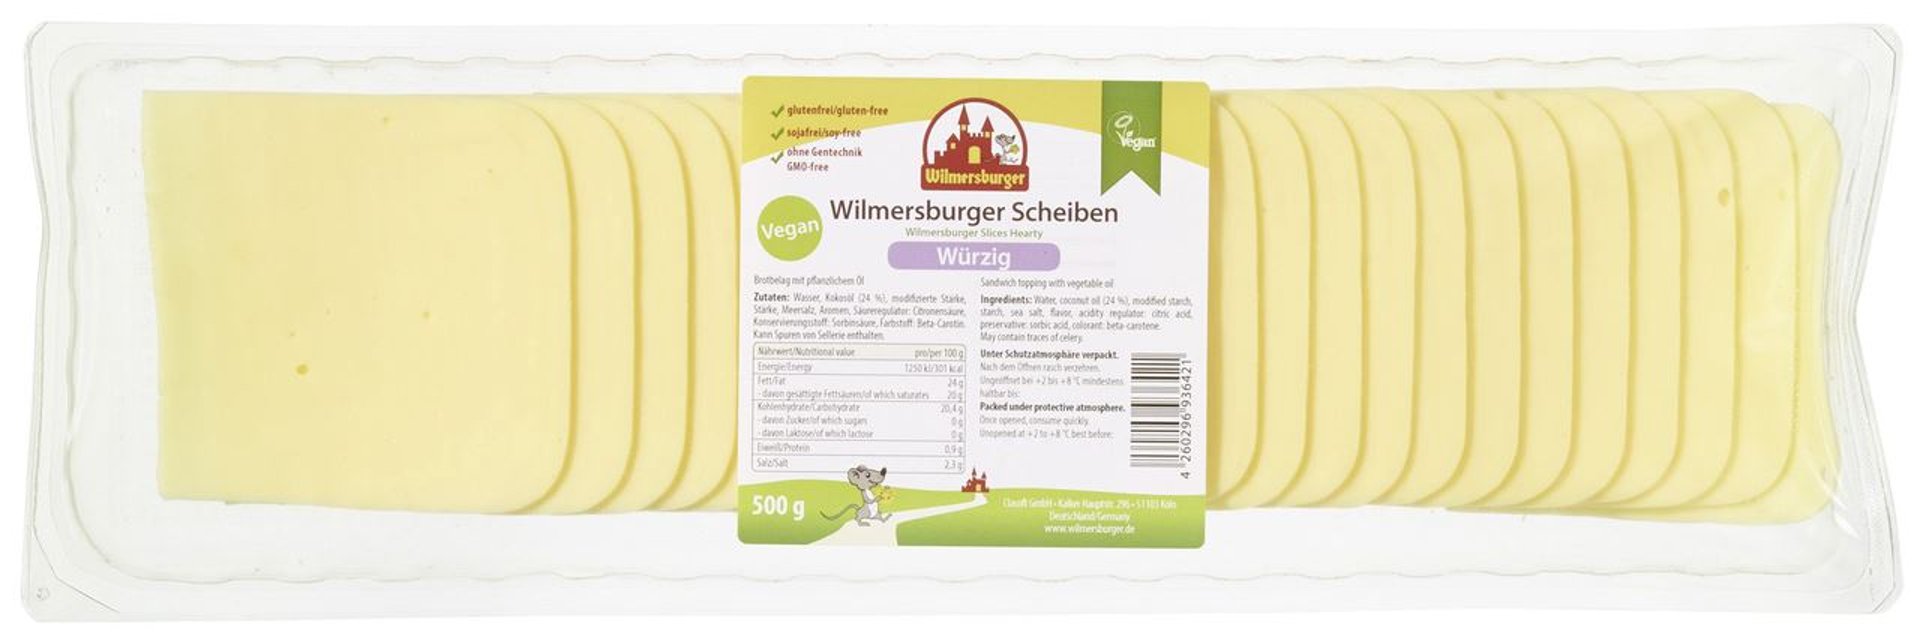 Wilmersburger - Scheiben Vegan Würzig 23 % Kokosöl - 500 g Packung